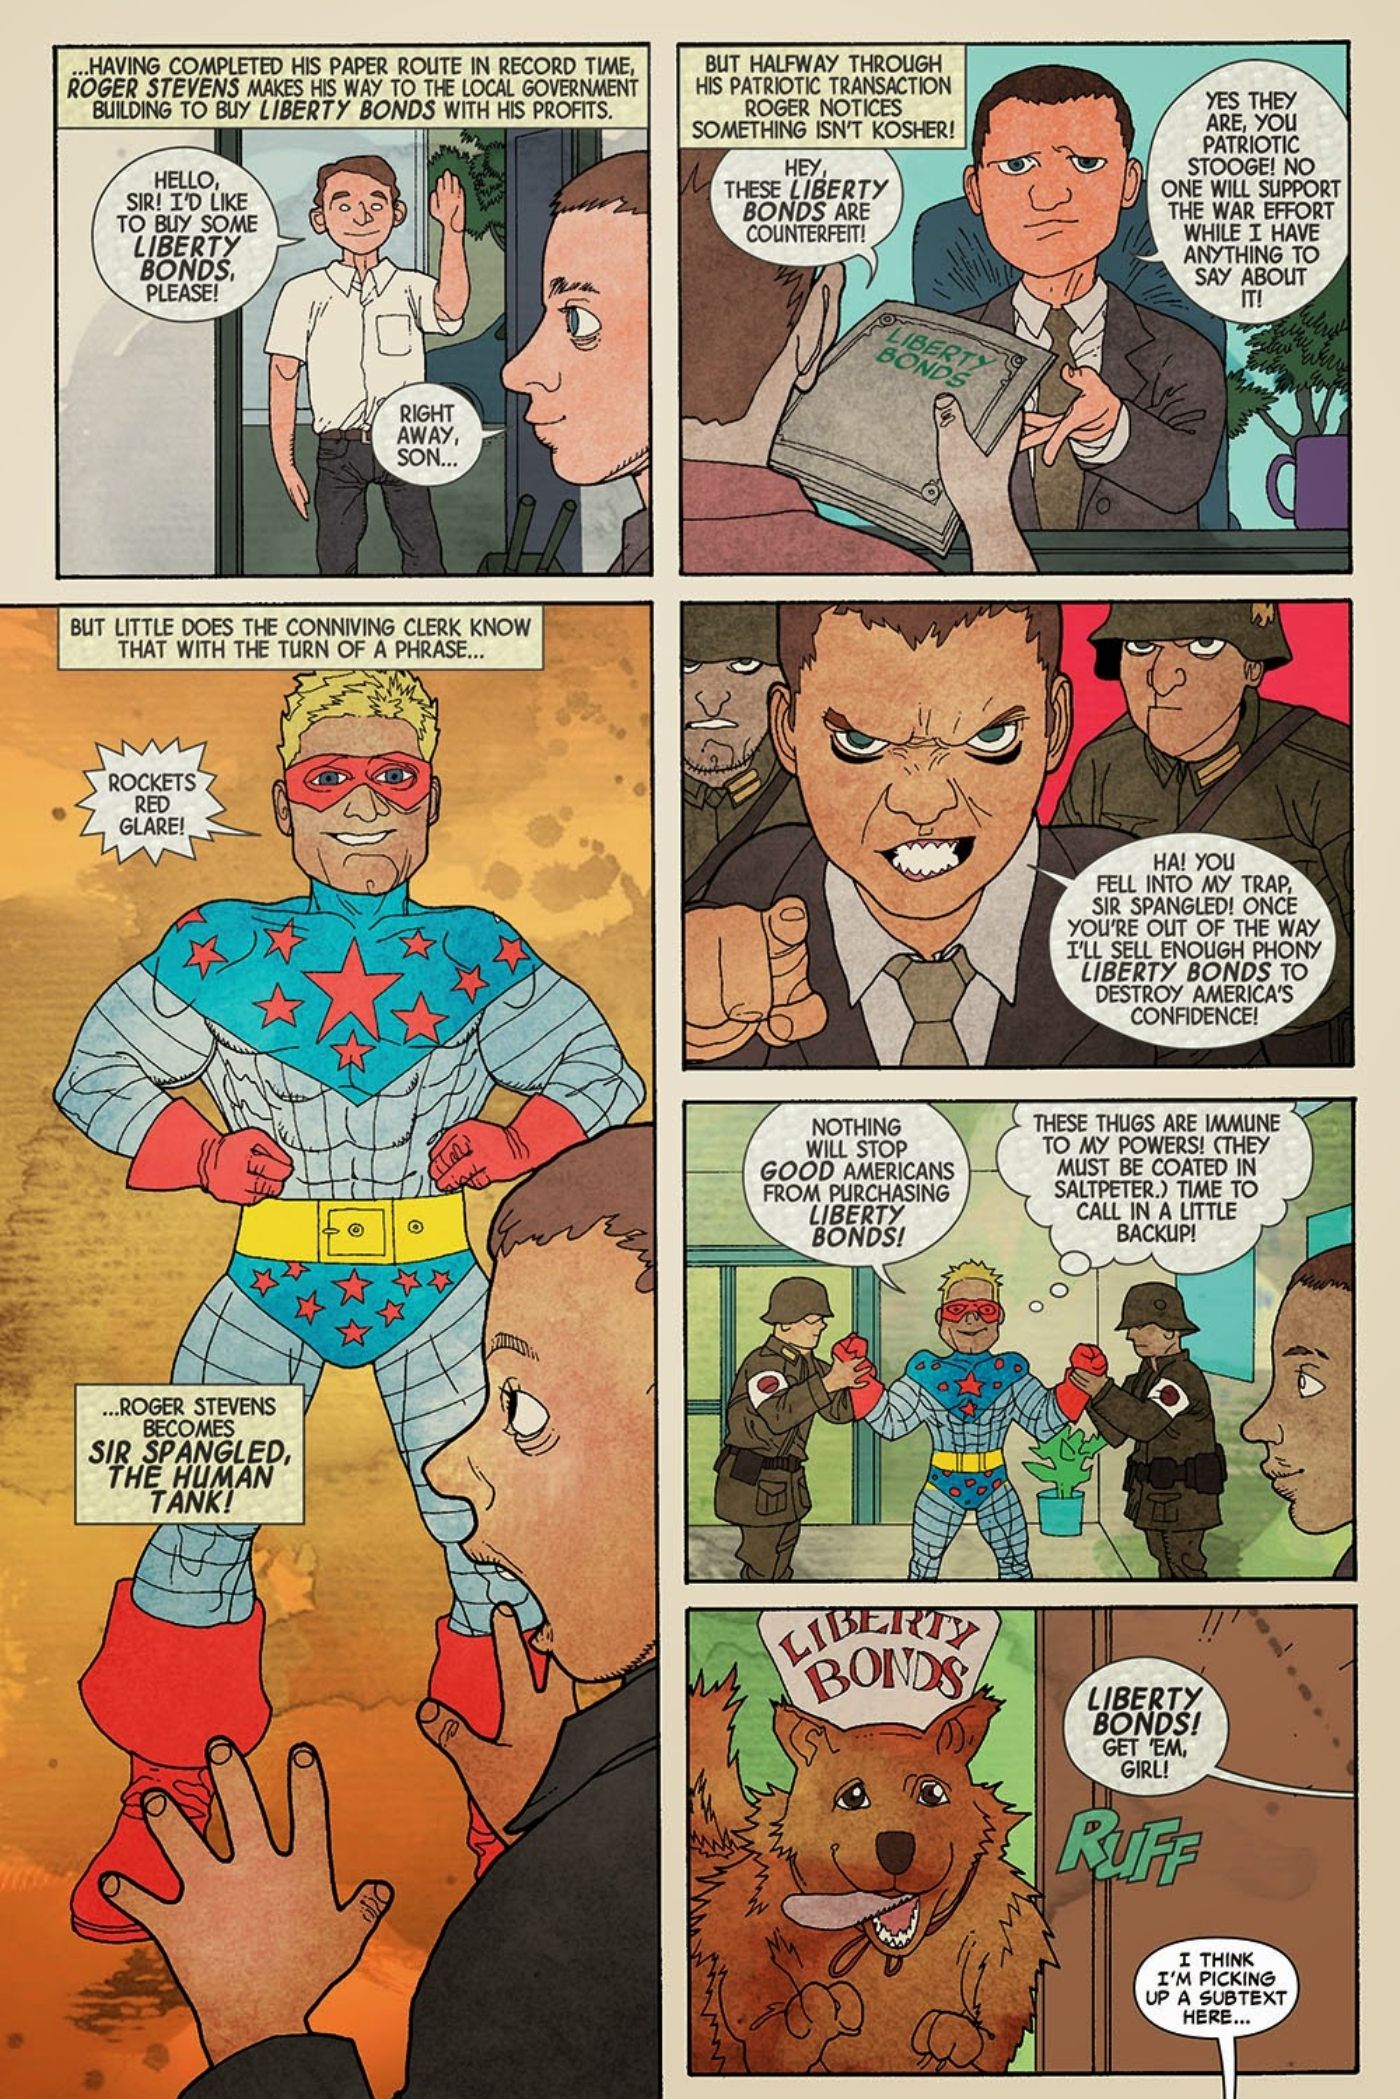 História em quadrinhos original do Capitão América.